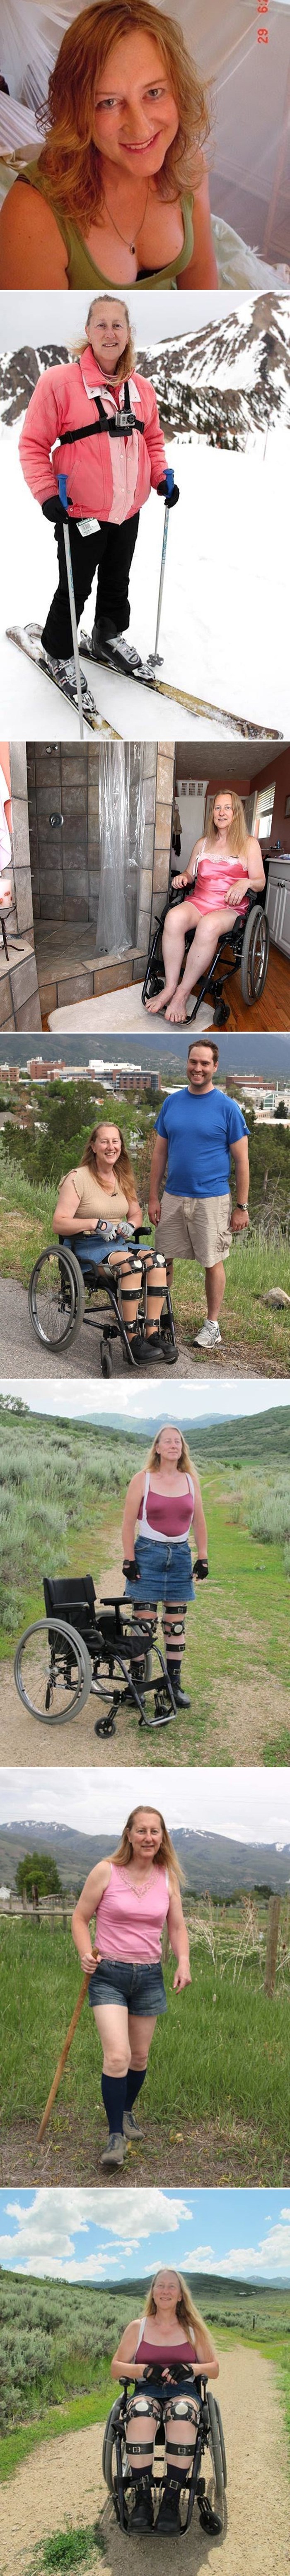 Čudna priča o ženi koja je molila doktore da joj paraliziraju noge iako je potpuno zdrava